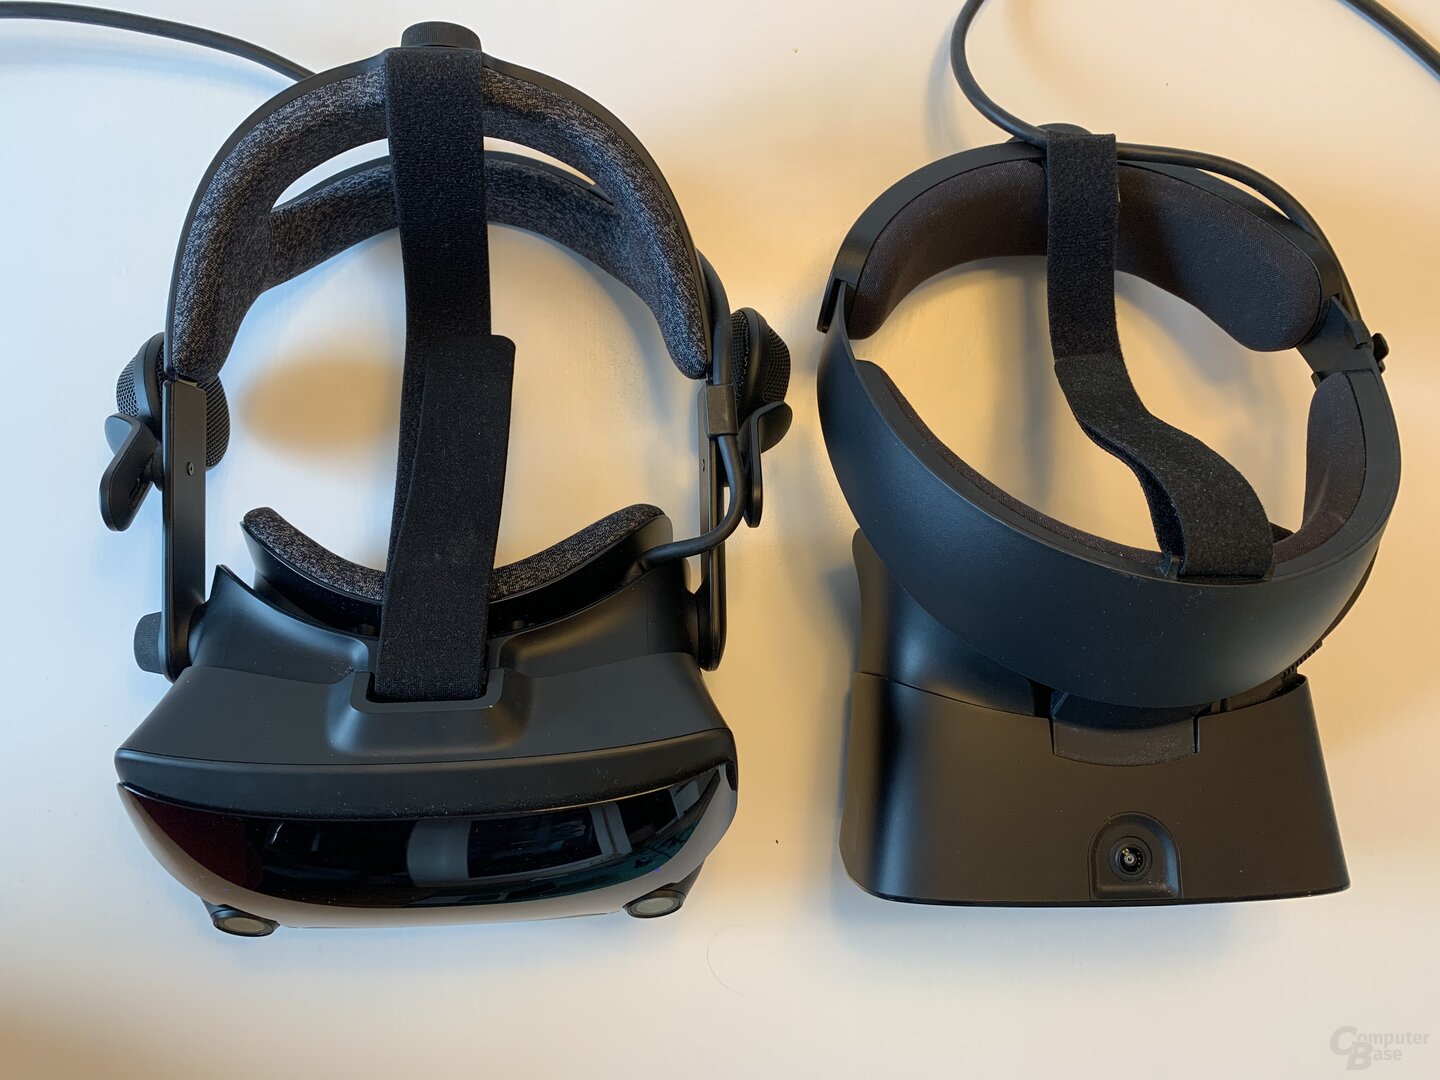 Valve Index vs. Oculus Rift S